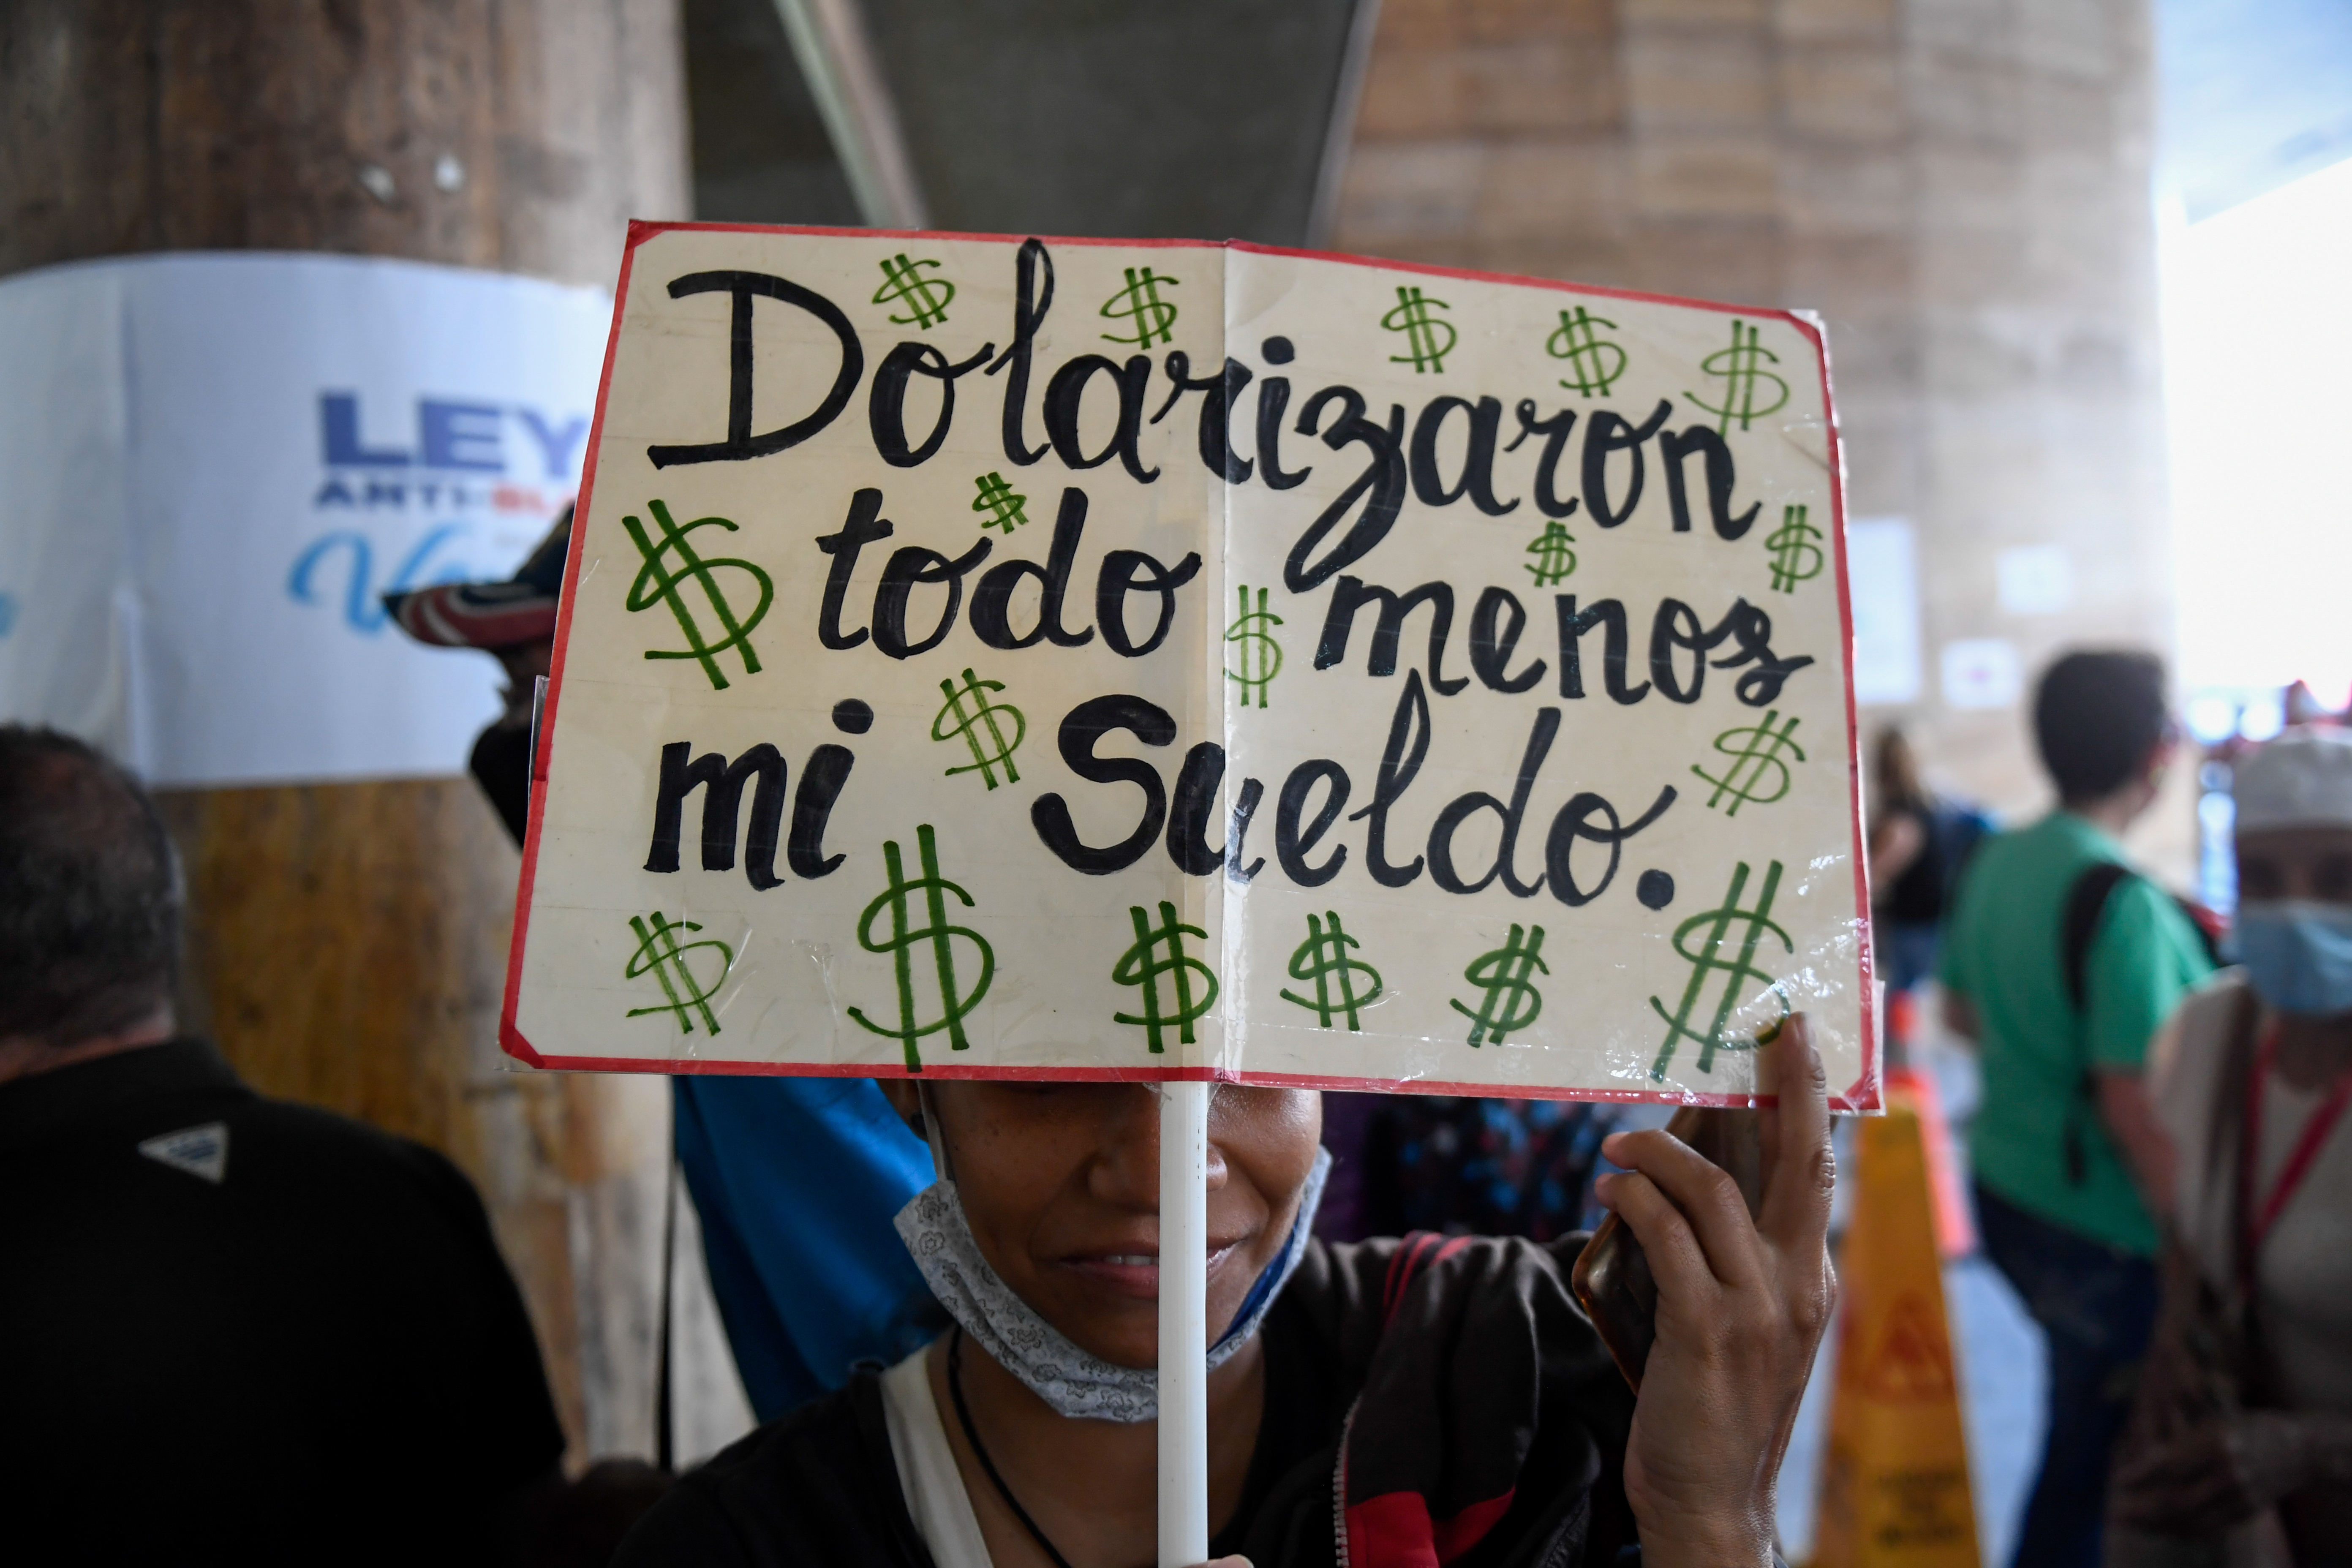 “Dolarizaron todo menos mi sueldo”: Desespero de los docentes se hizo sentir en Plaza Caracas (Fotos)